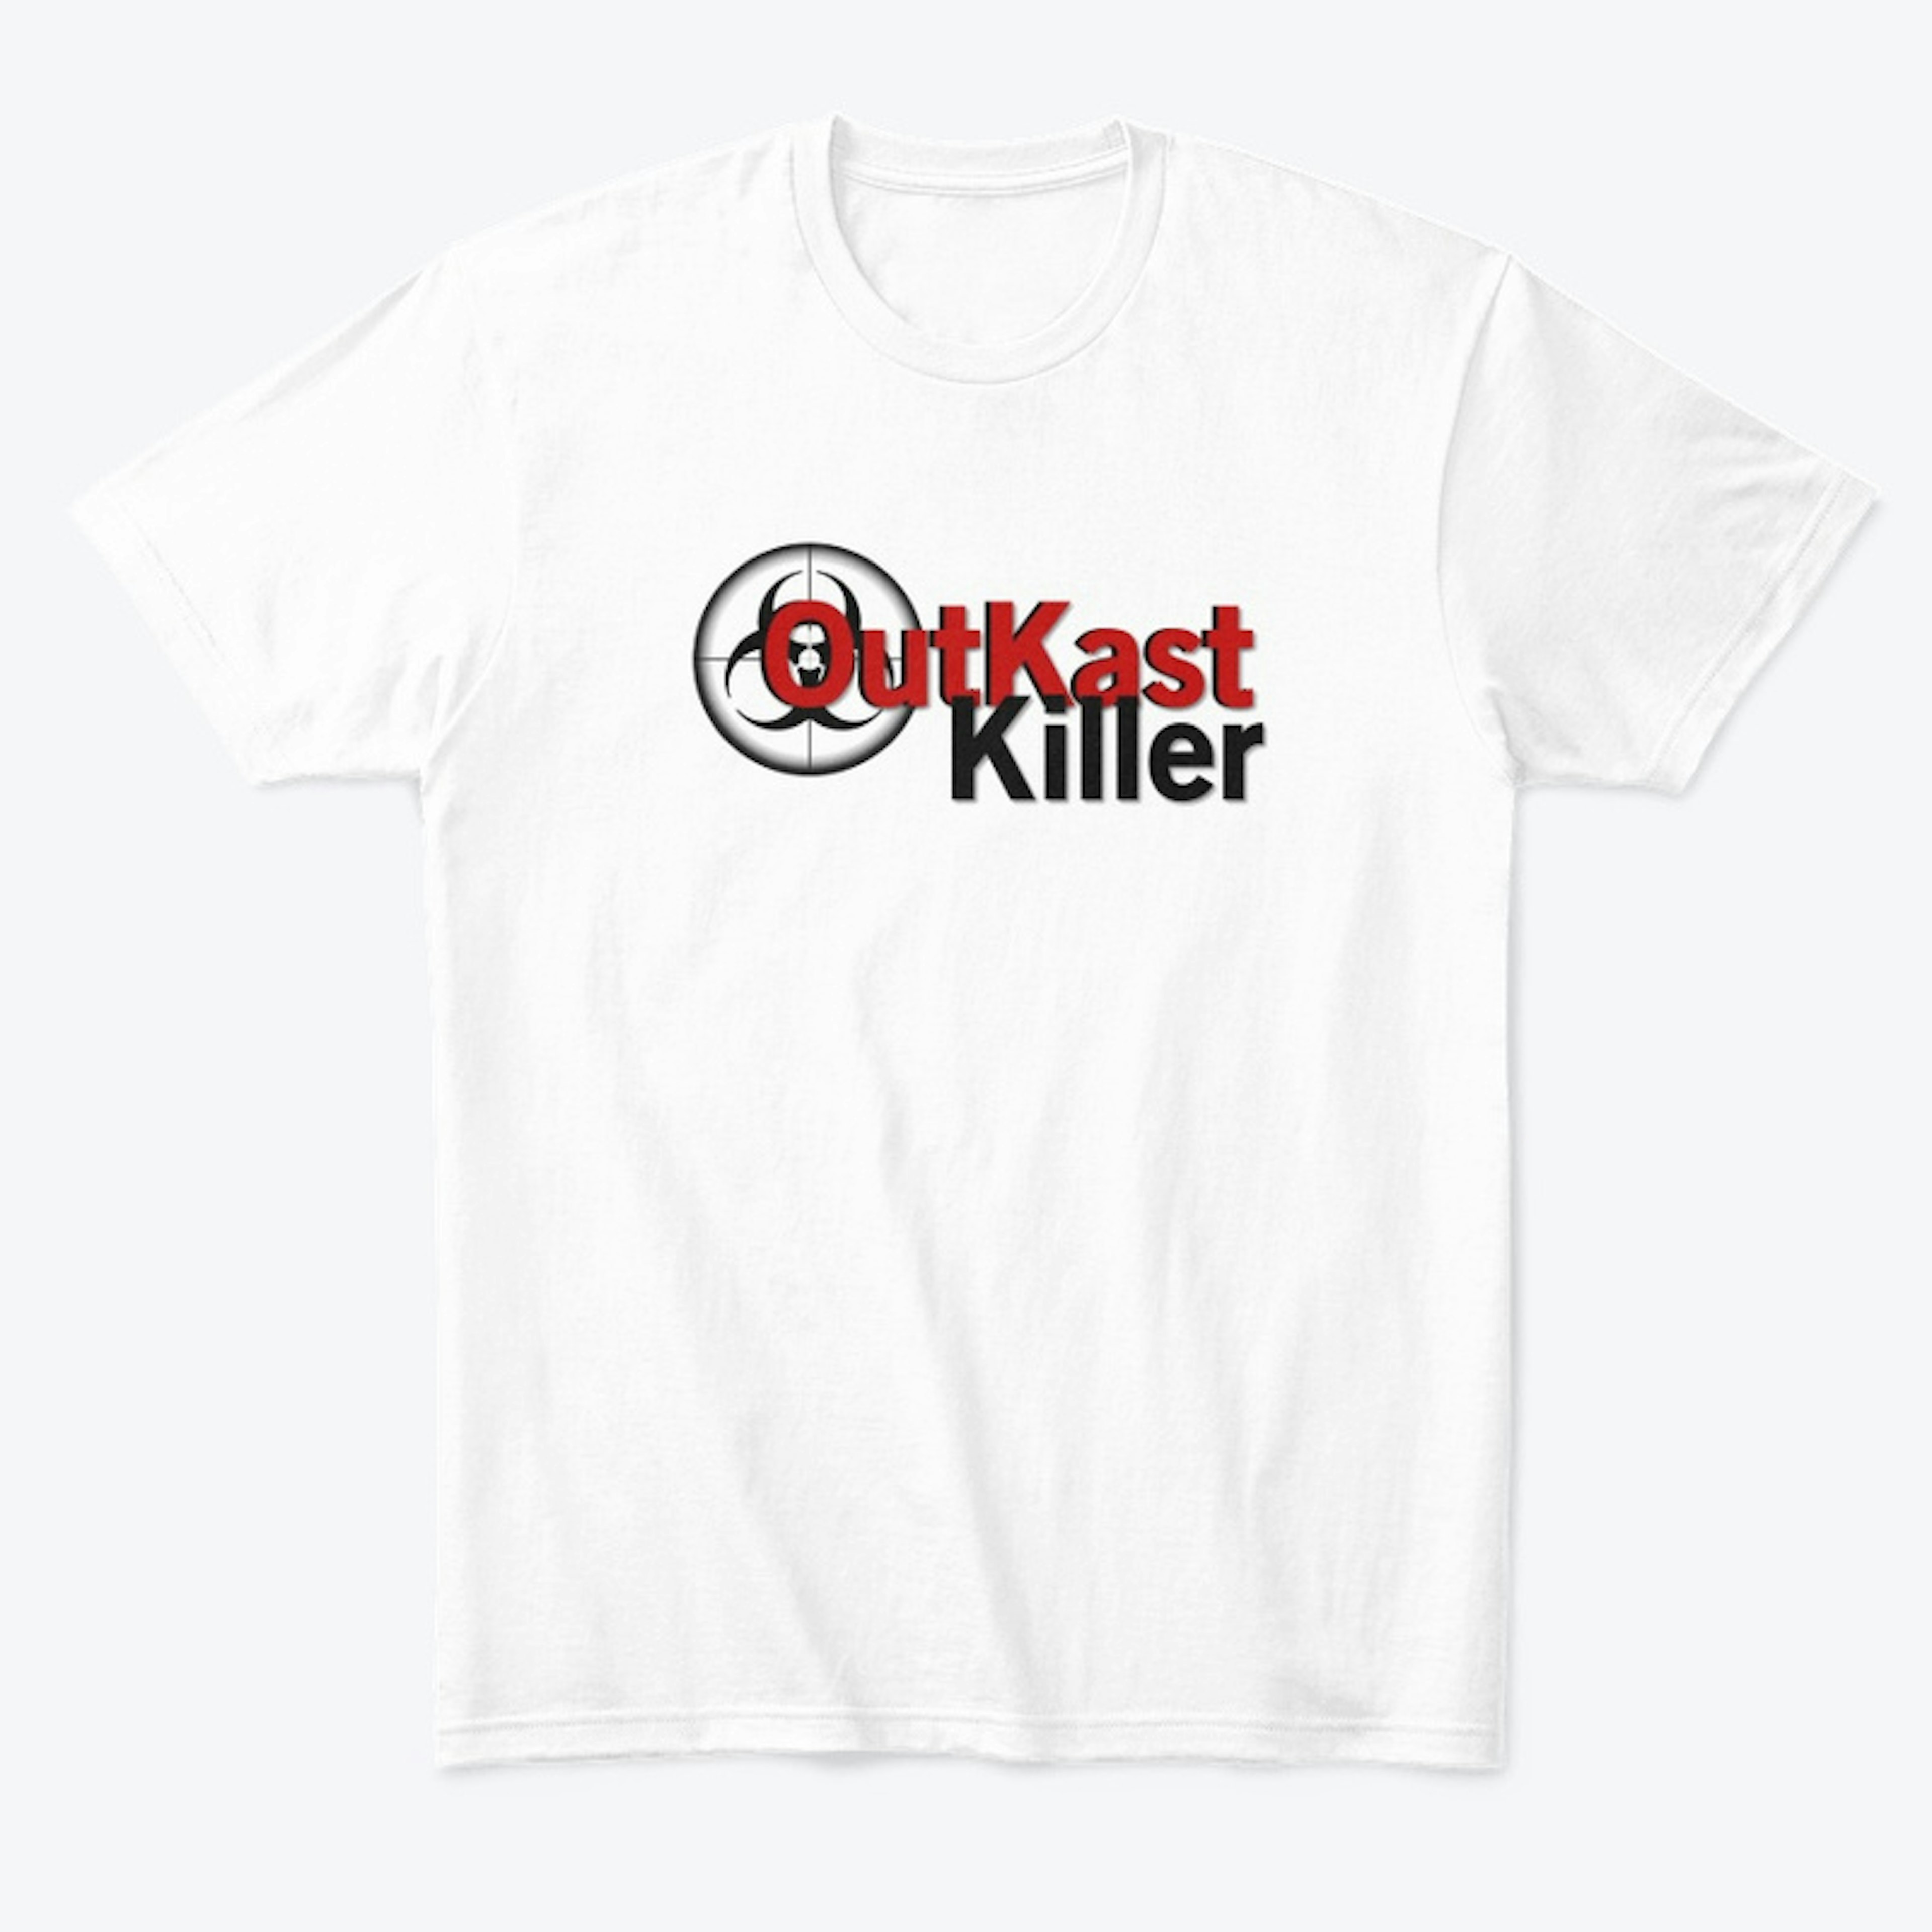 Support OutKastKiller 